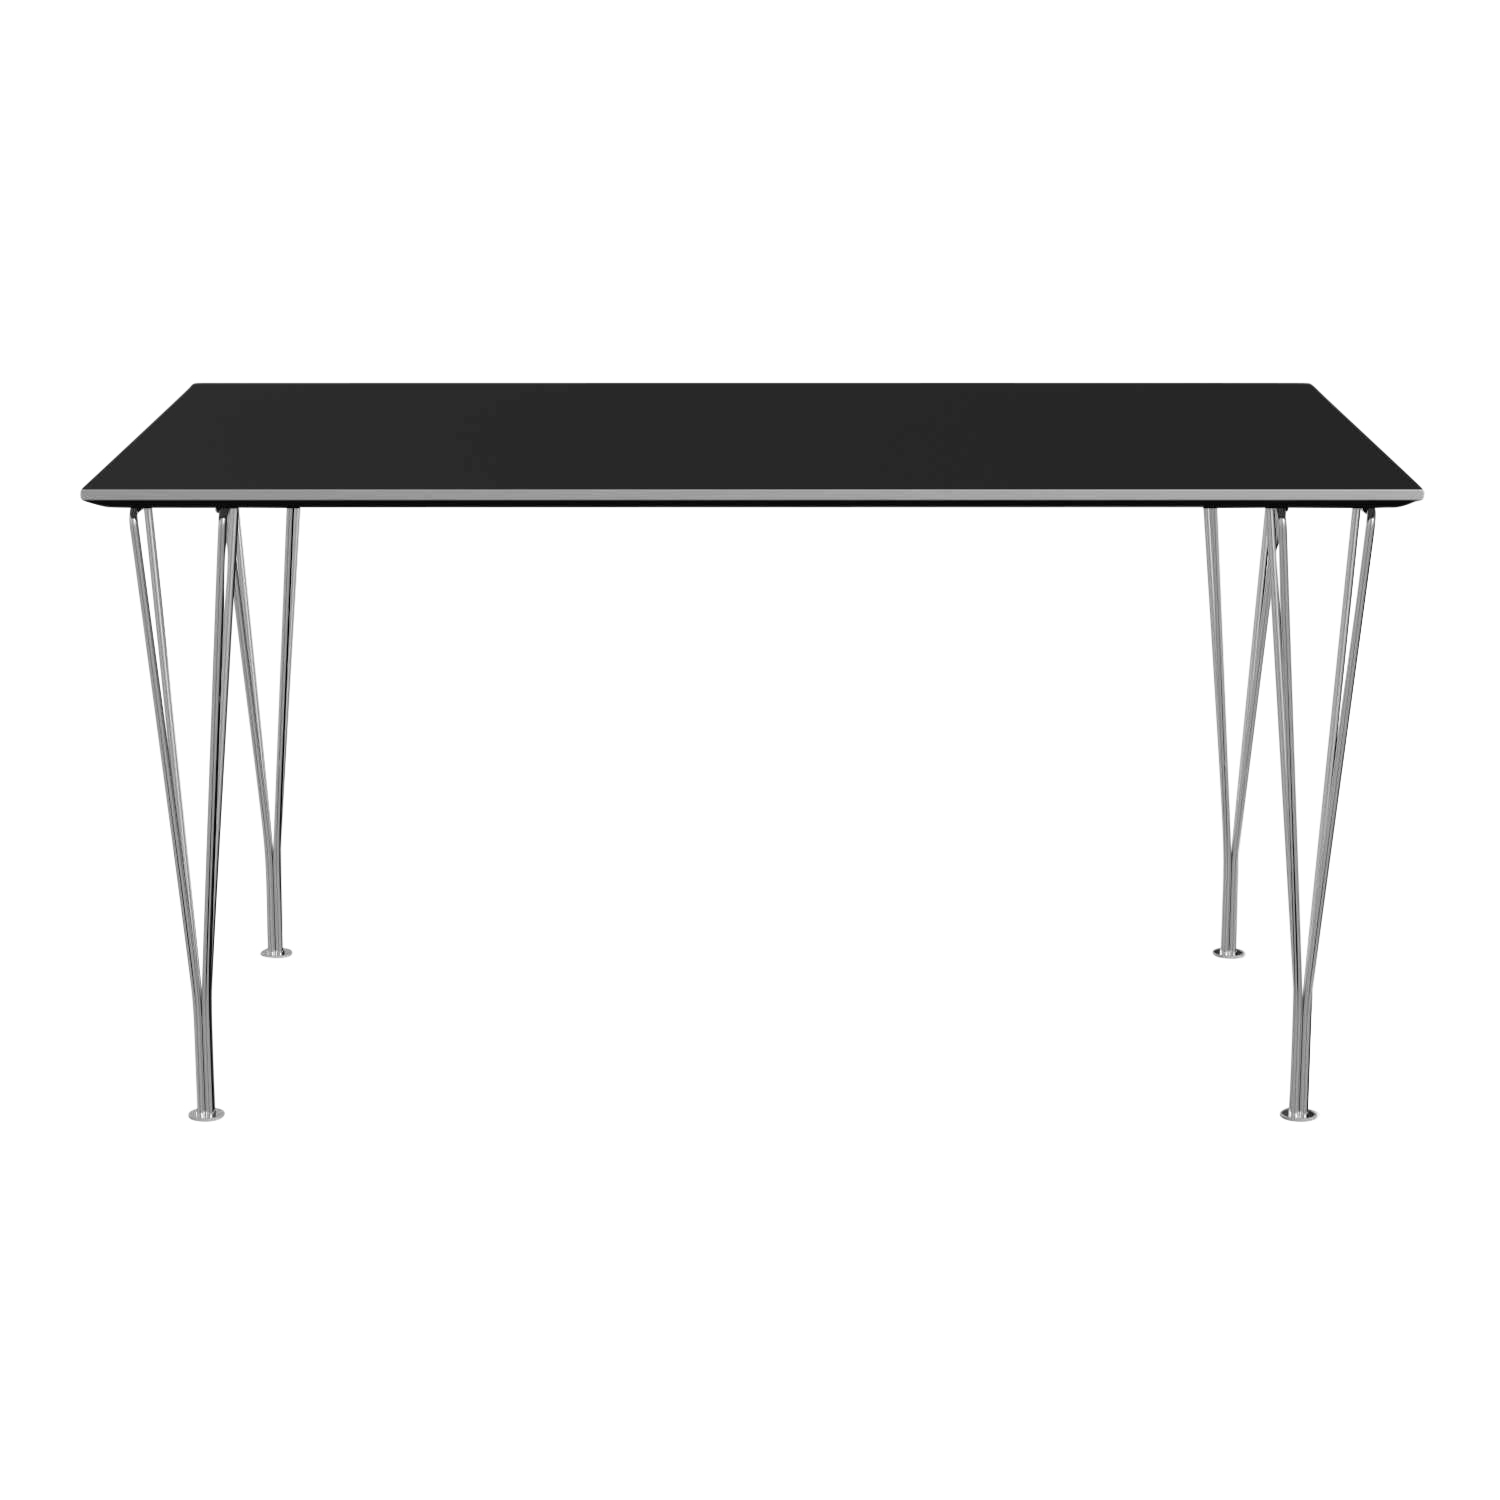 RECTANGULAR Esstisch, Tischplatte laminat, grau efeso m. kante aluminium, Grösse l. 160 x b. 80 cm, Gestell verchromt von Fritz Hansen